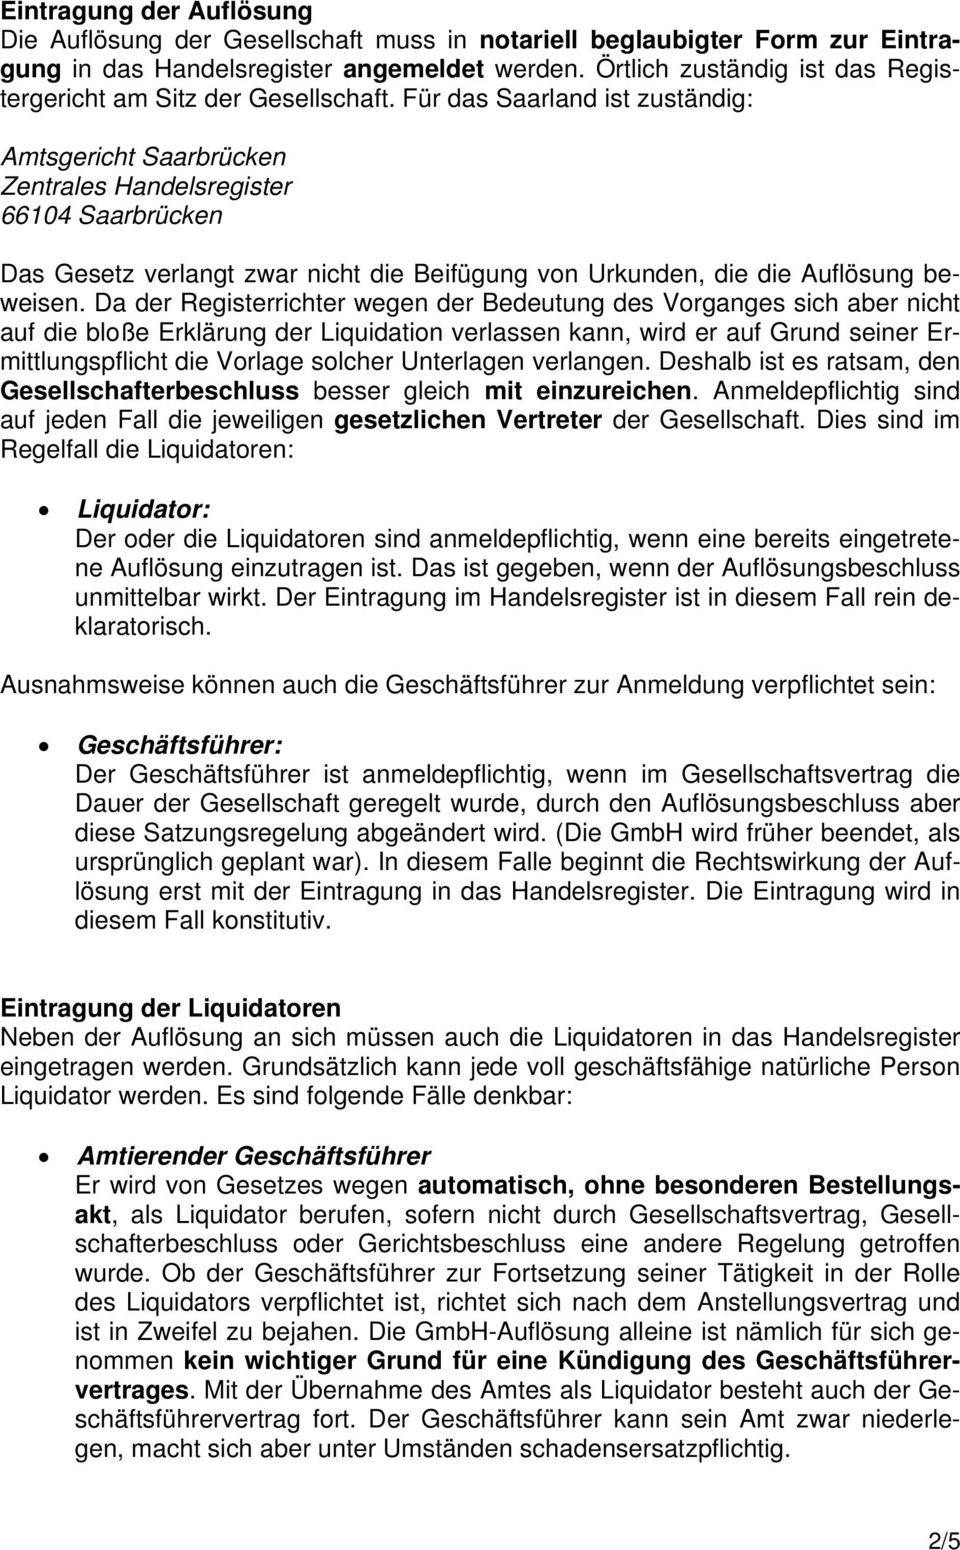 Für das Saarland ist zuständig: Amtsgericht Saarbrücken Zentrales Handelsregister 66104 Saarbrücken Das Gesetz verlangt zwar nicht die Beifügung von Urkunden, die die Auflösung beweisen.